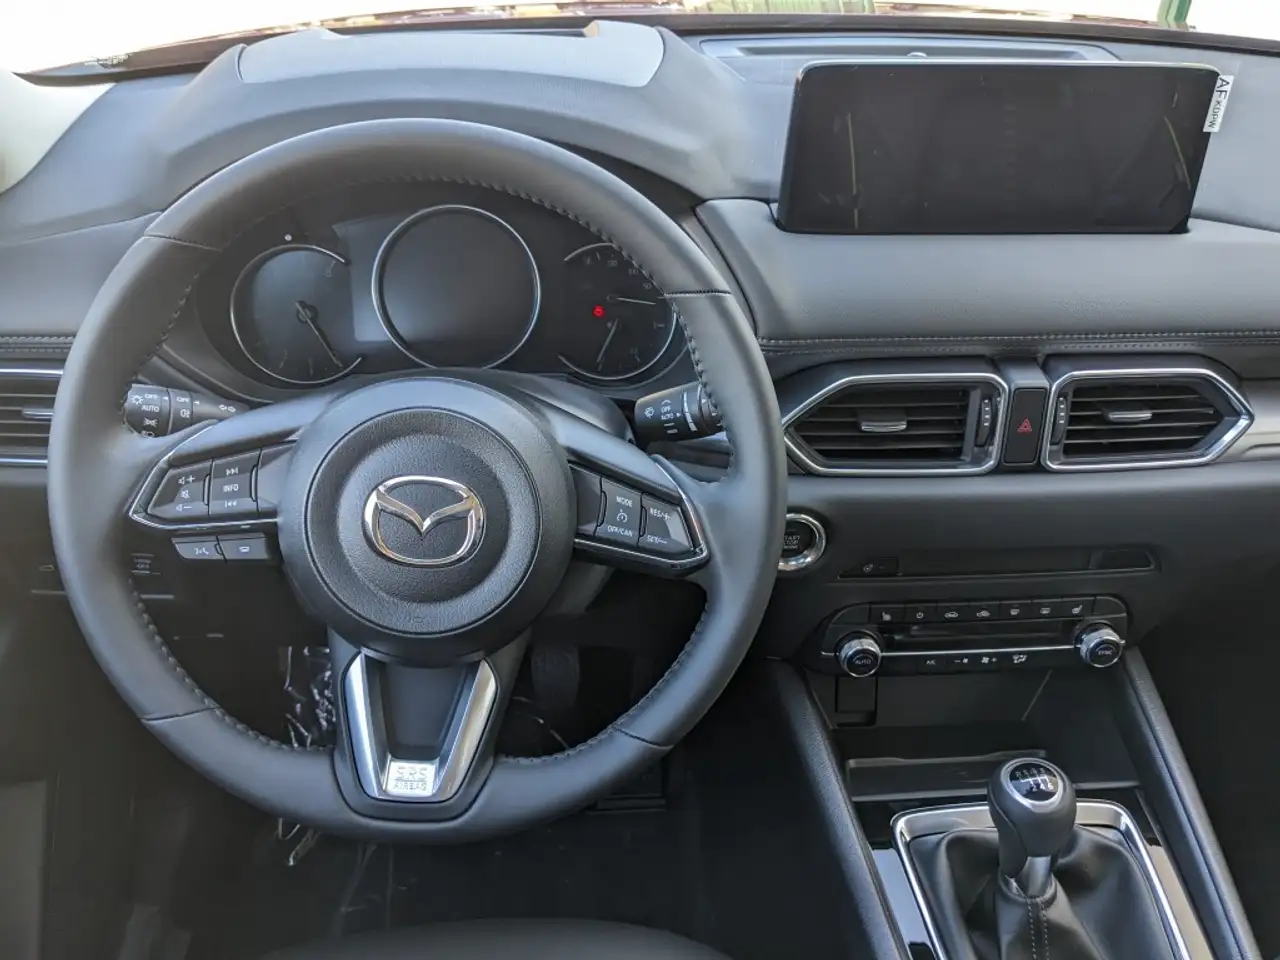 Mazda CX-5 SUV/Geländewagen/Pickup in Weiß neu in Hoyerswerda für € 39.380